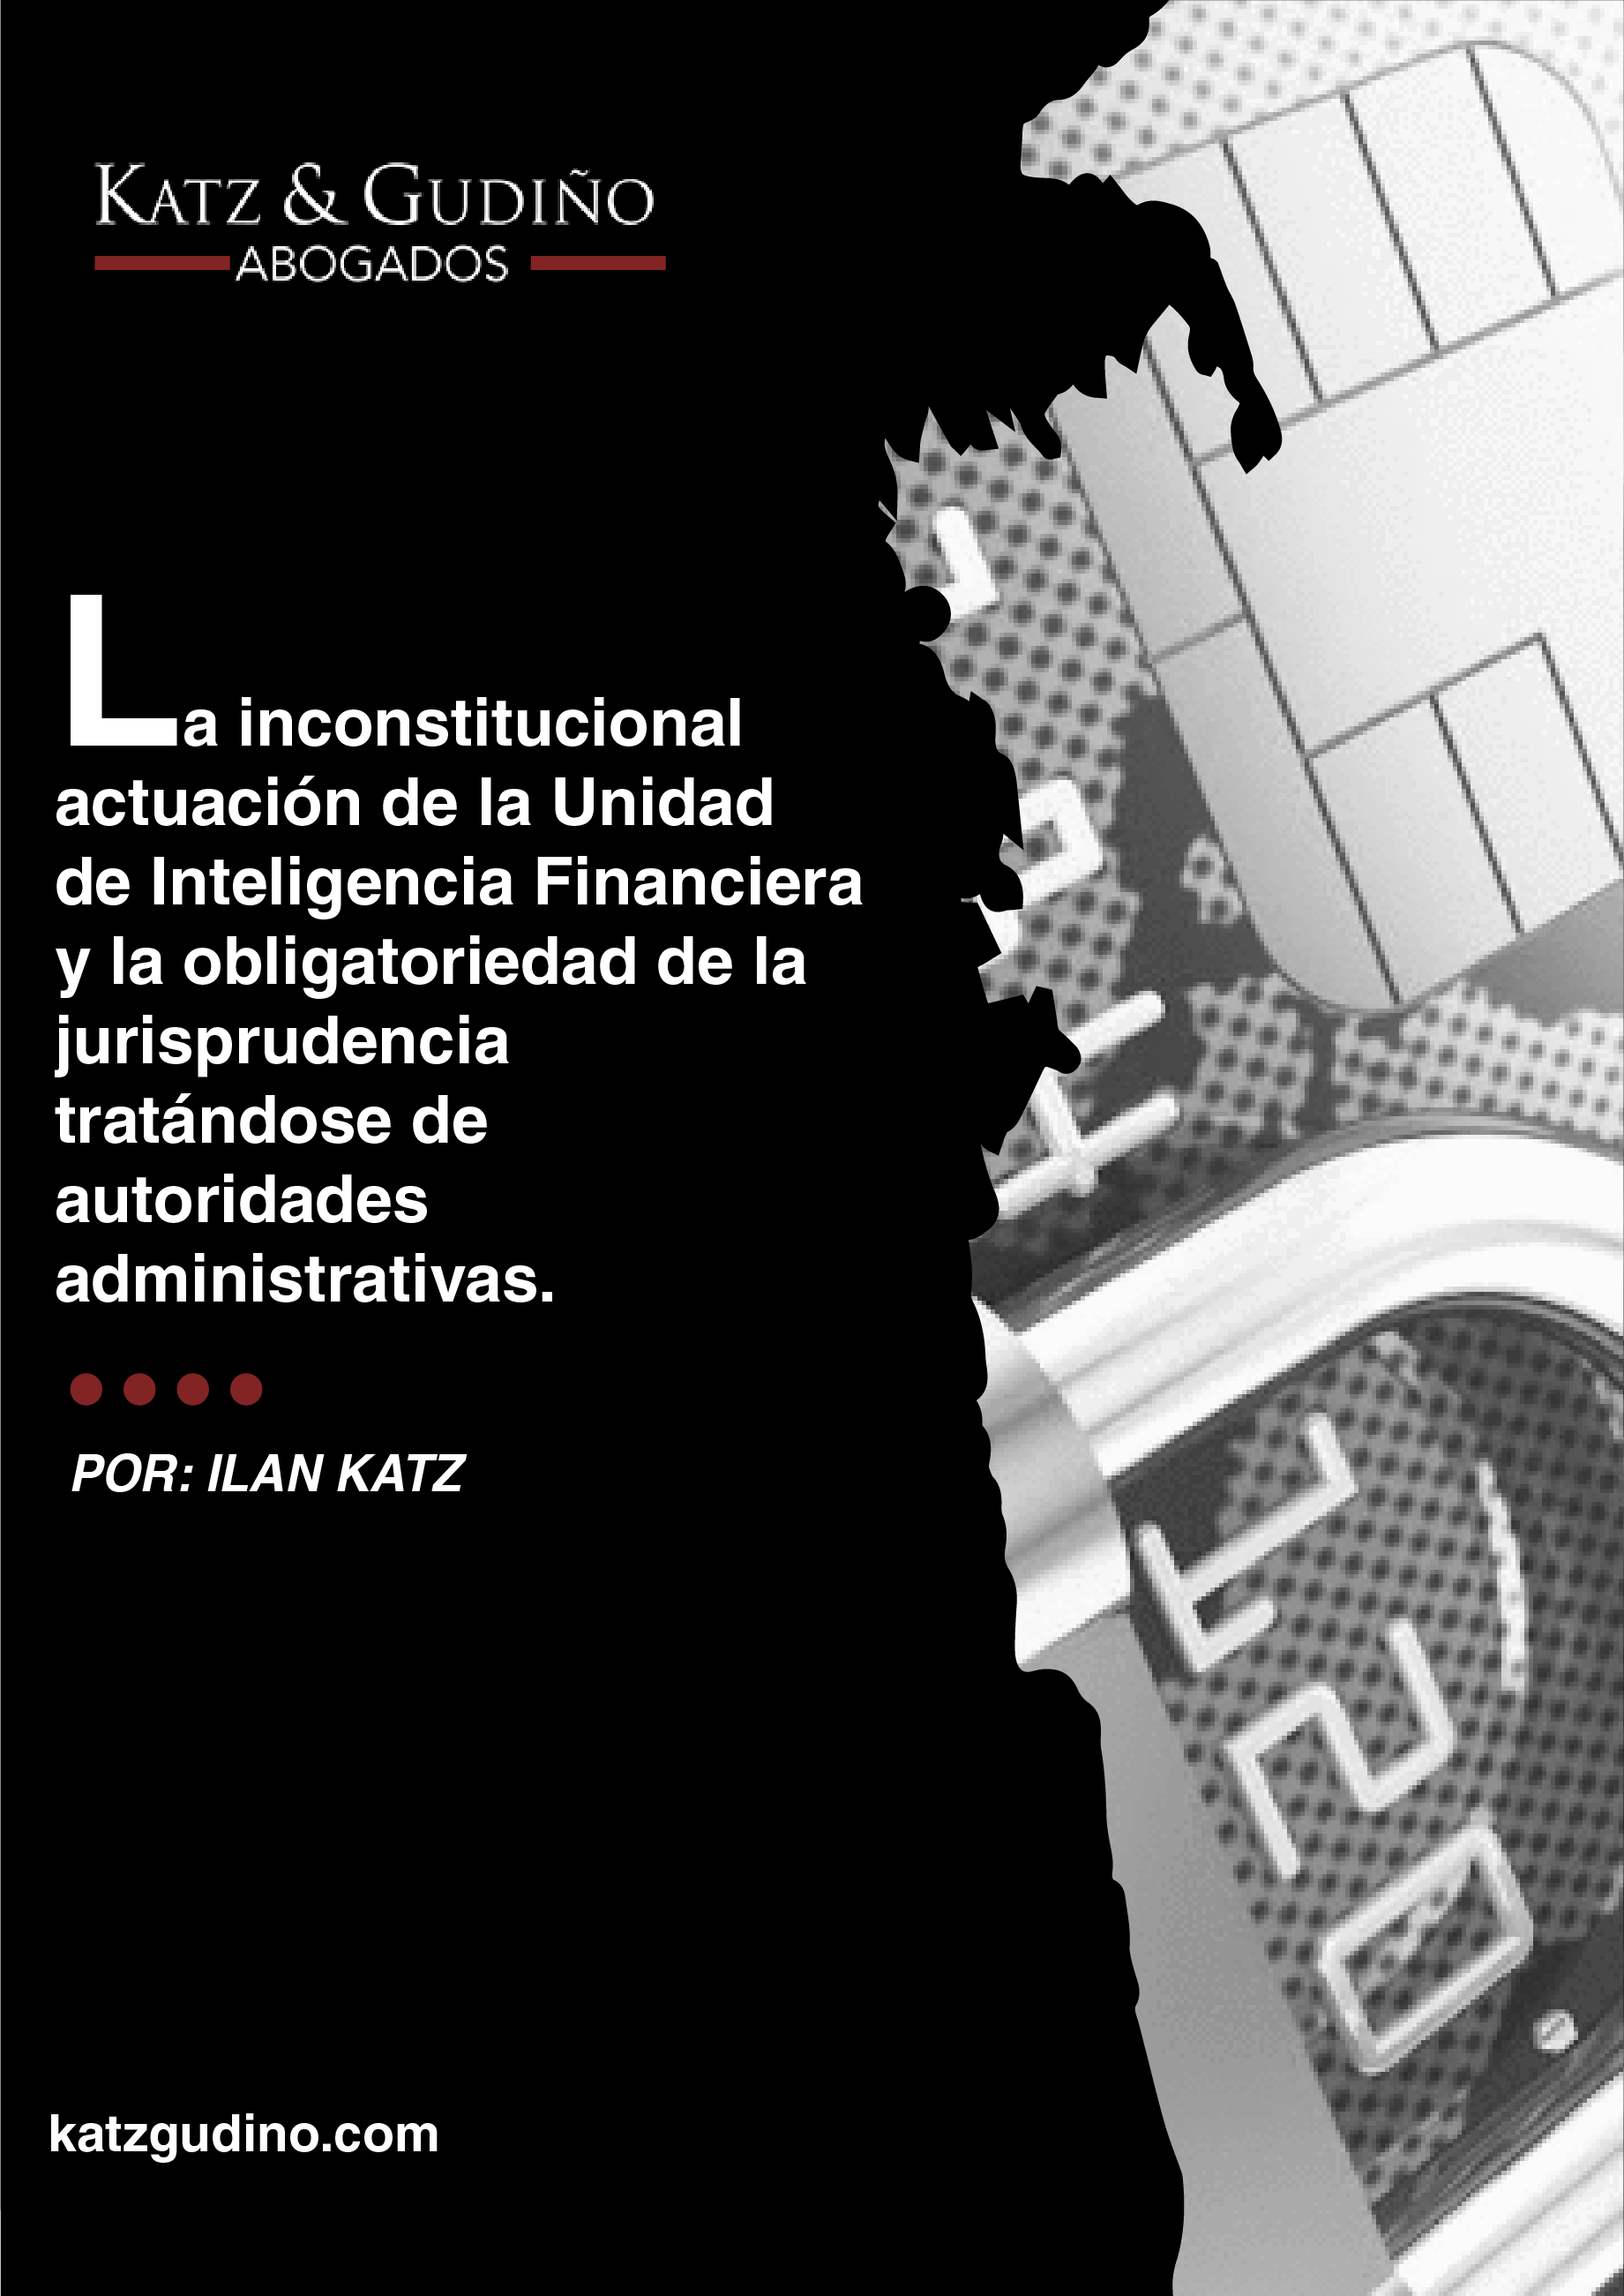 La inconstitucional actuación de la Unidad de Inteligencia Financiera y la obligatoriedad de la jurisprudencia tratándose de autoridades administrativas.